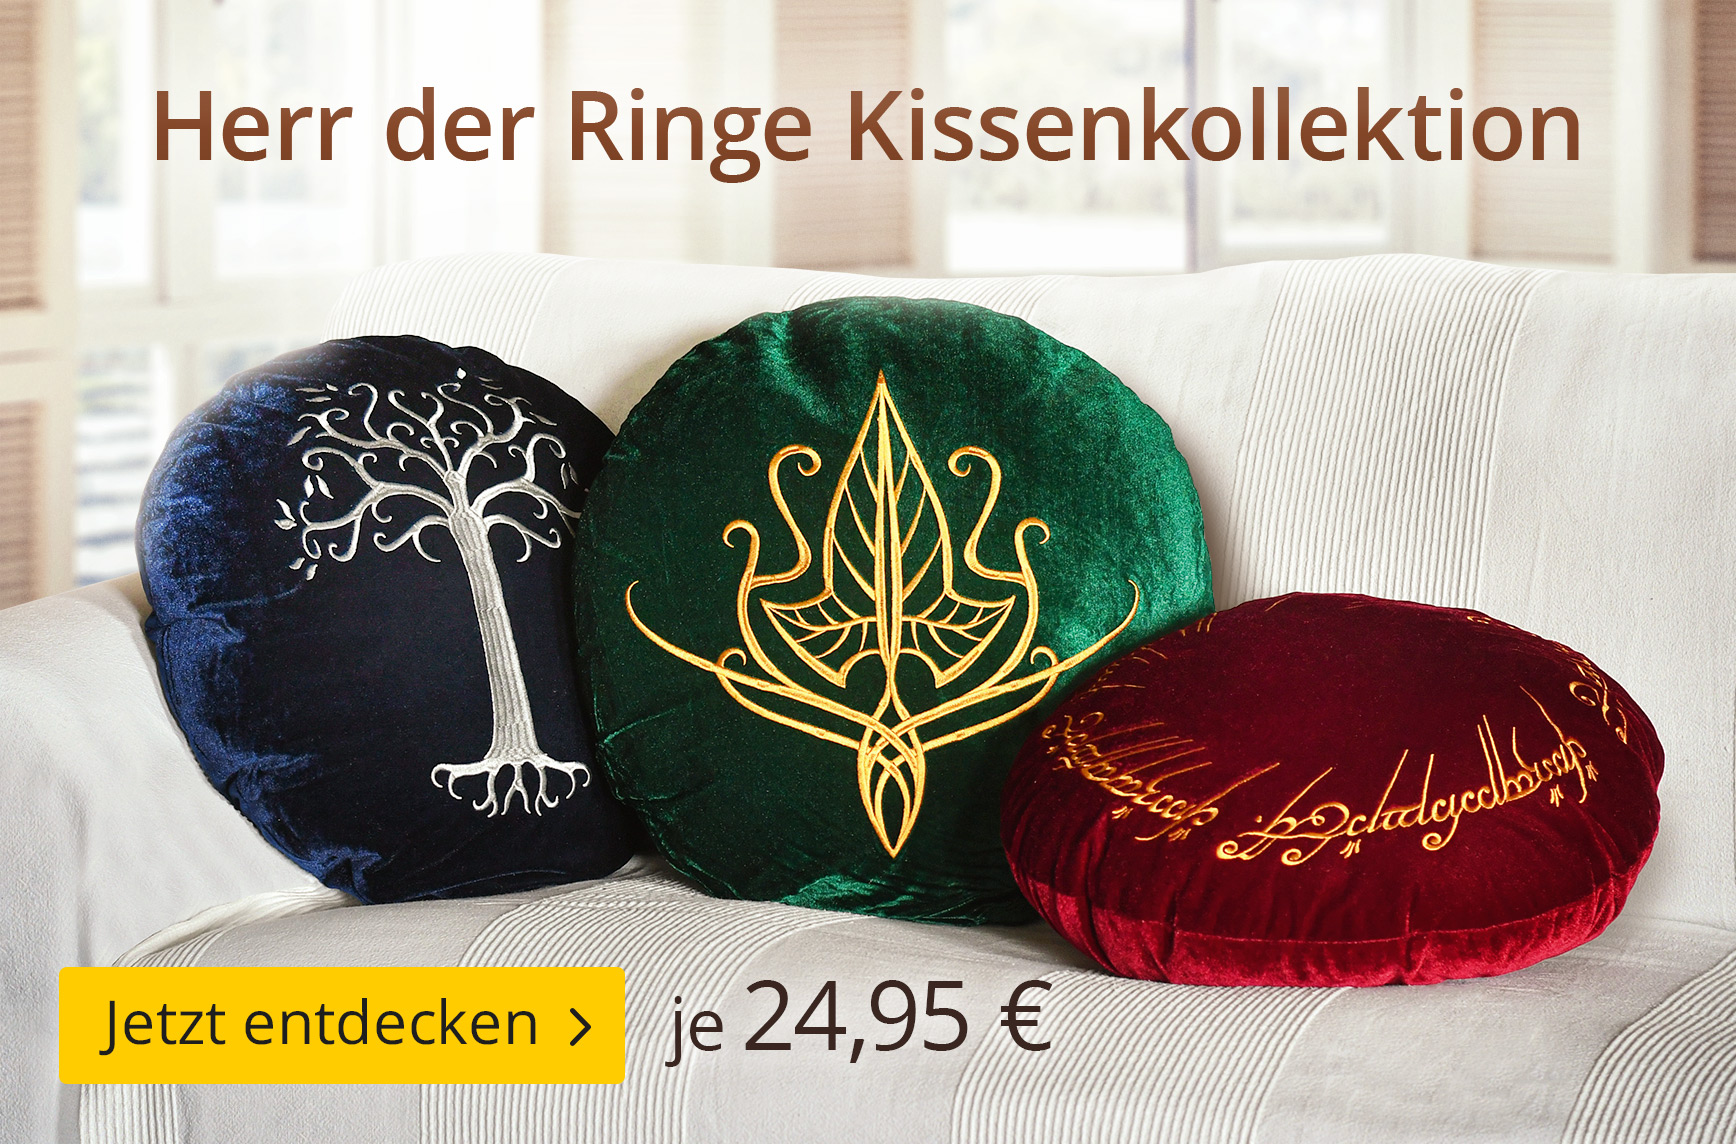 Herr der Ringe Kissen - je 24,95€